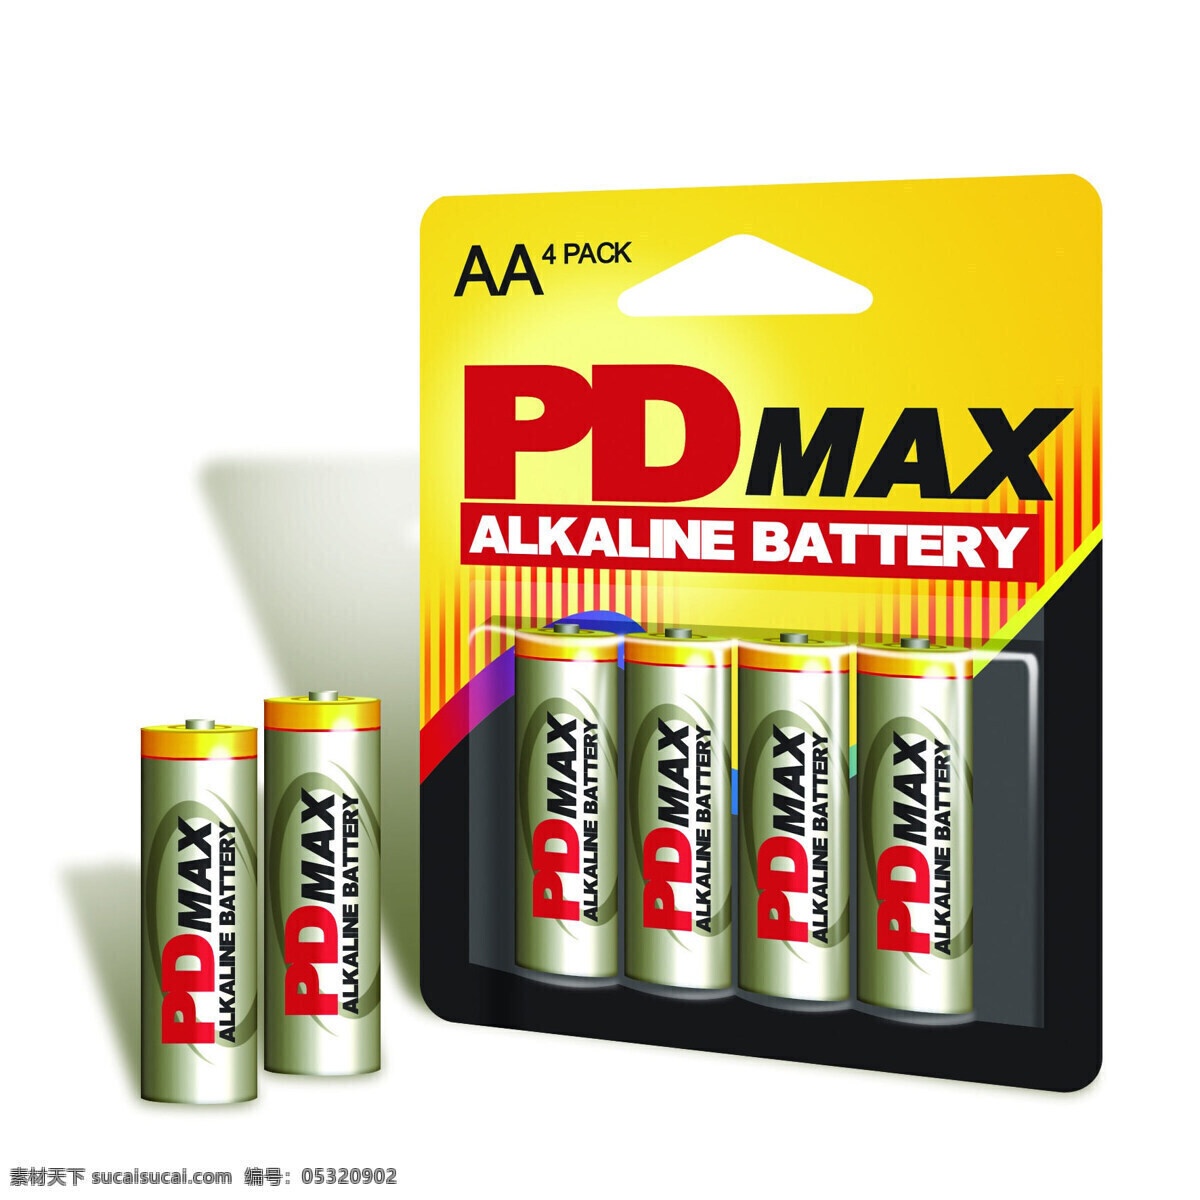 电池 包装 电池包装 生活百科 生活素材 5号电池 psd源文件 包装设计